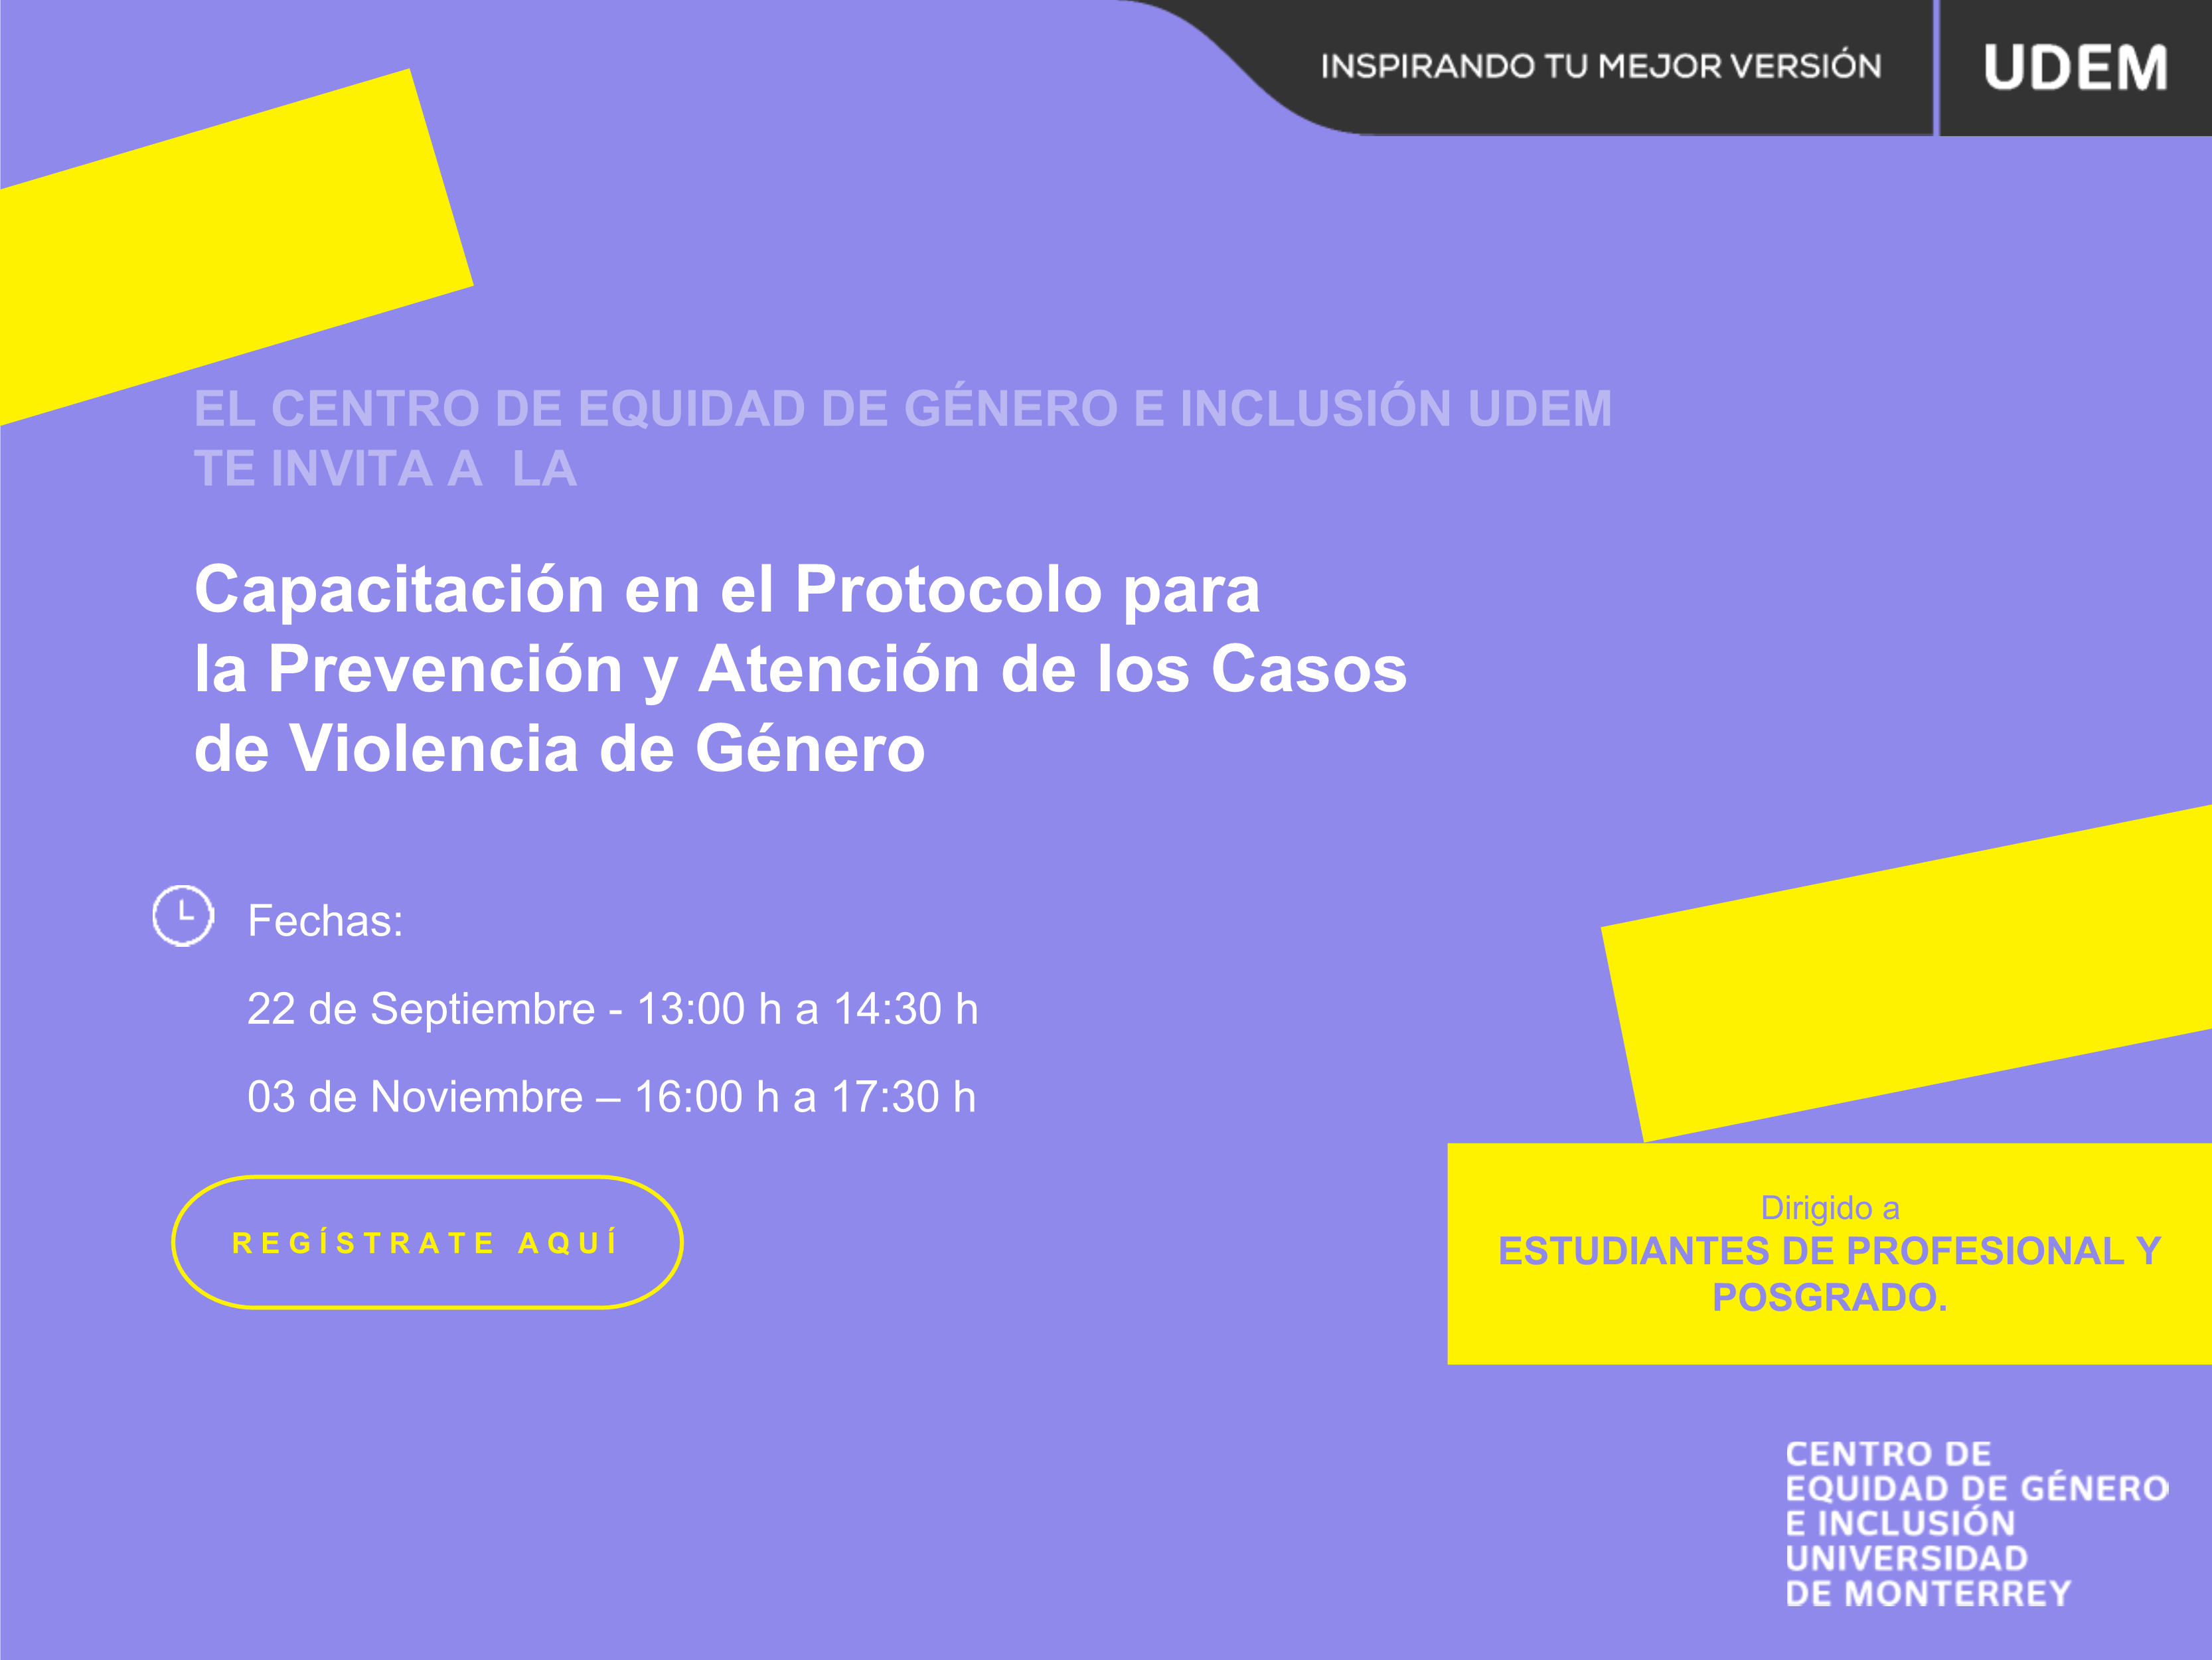 Capacitación en el Protocolo para la Prevención y Atención de los Casos de Violencia de Género - Profesional y Posgrado